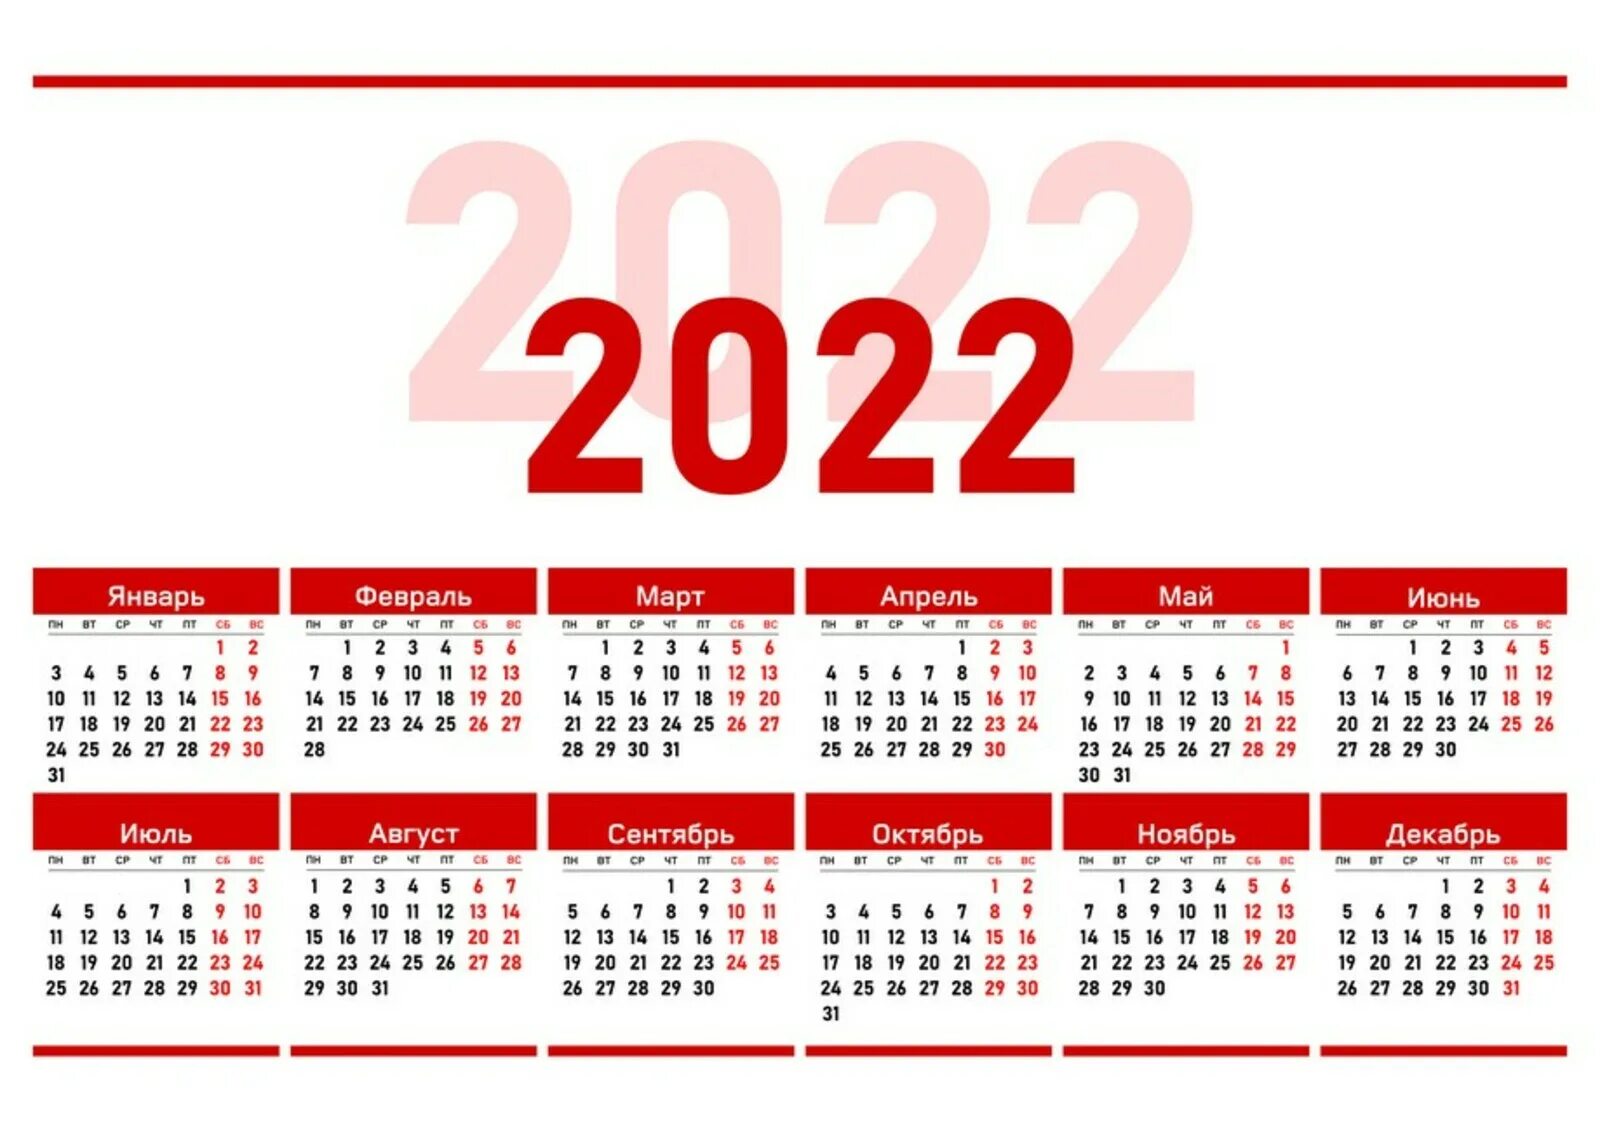 Календарь на 2022 год ЛНР. Официальные праздники 2022 года в России. Выходные дни в 2022 году в России. Рабочий календарь на 2022. Сколько лет до 31 декабря